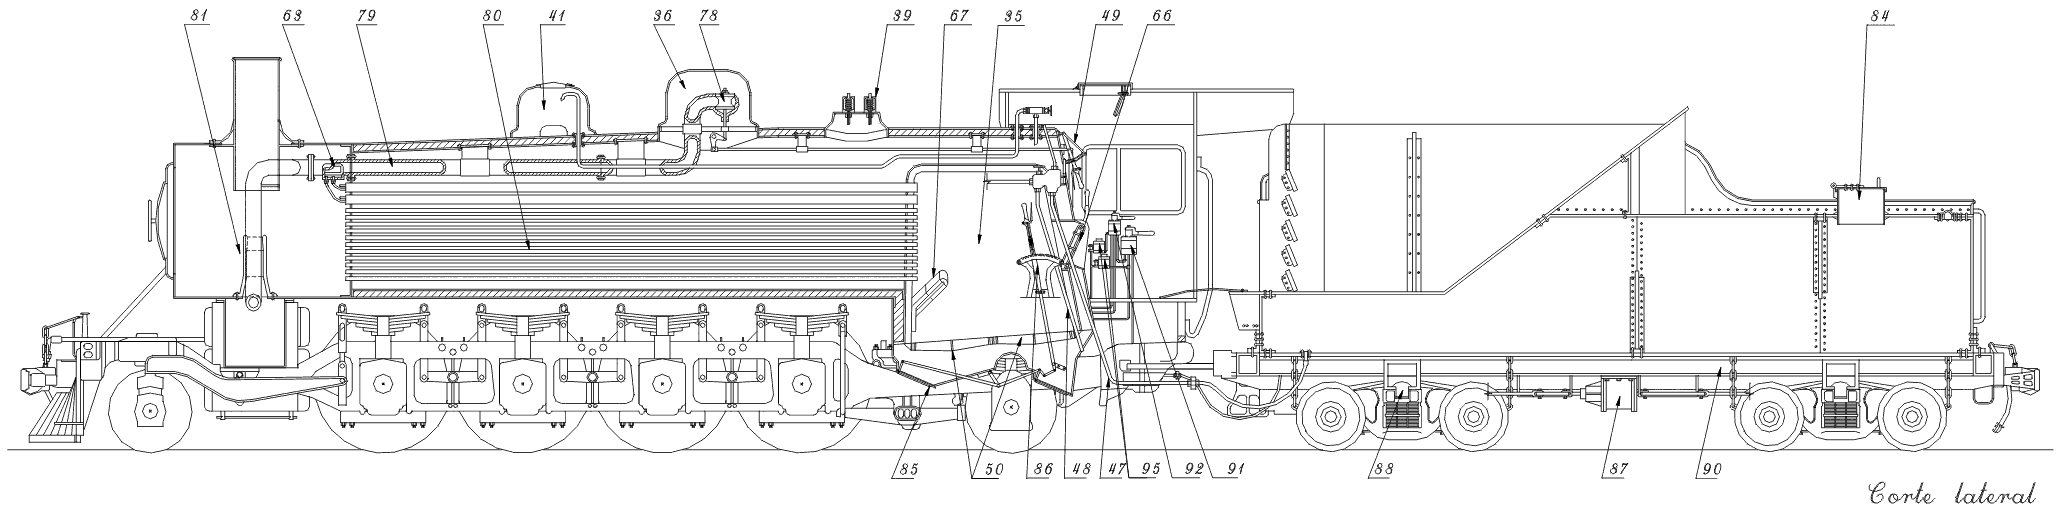 Vista em corte lateral com indicação nuerada das partes internas da locomotiva